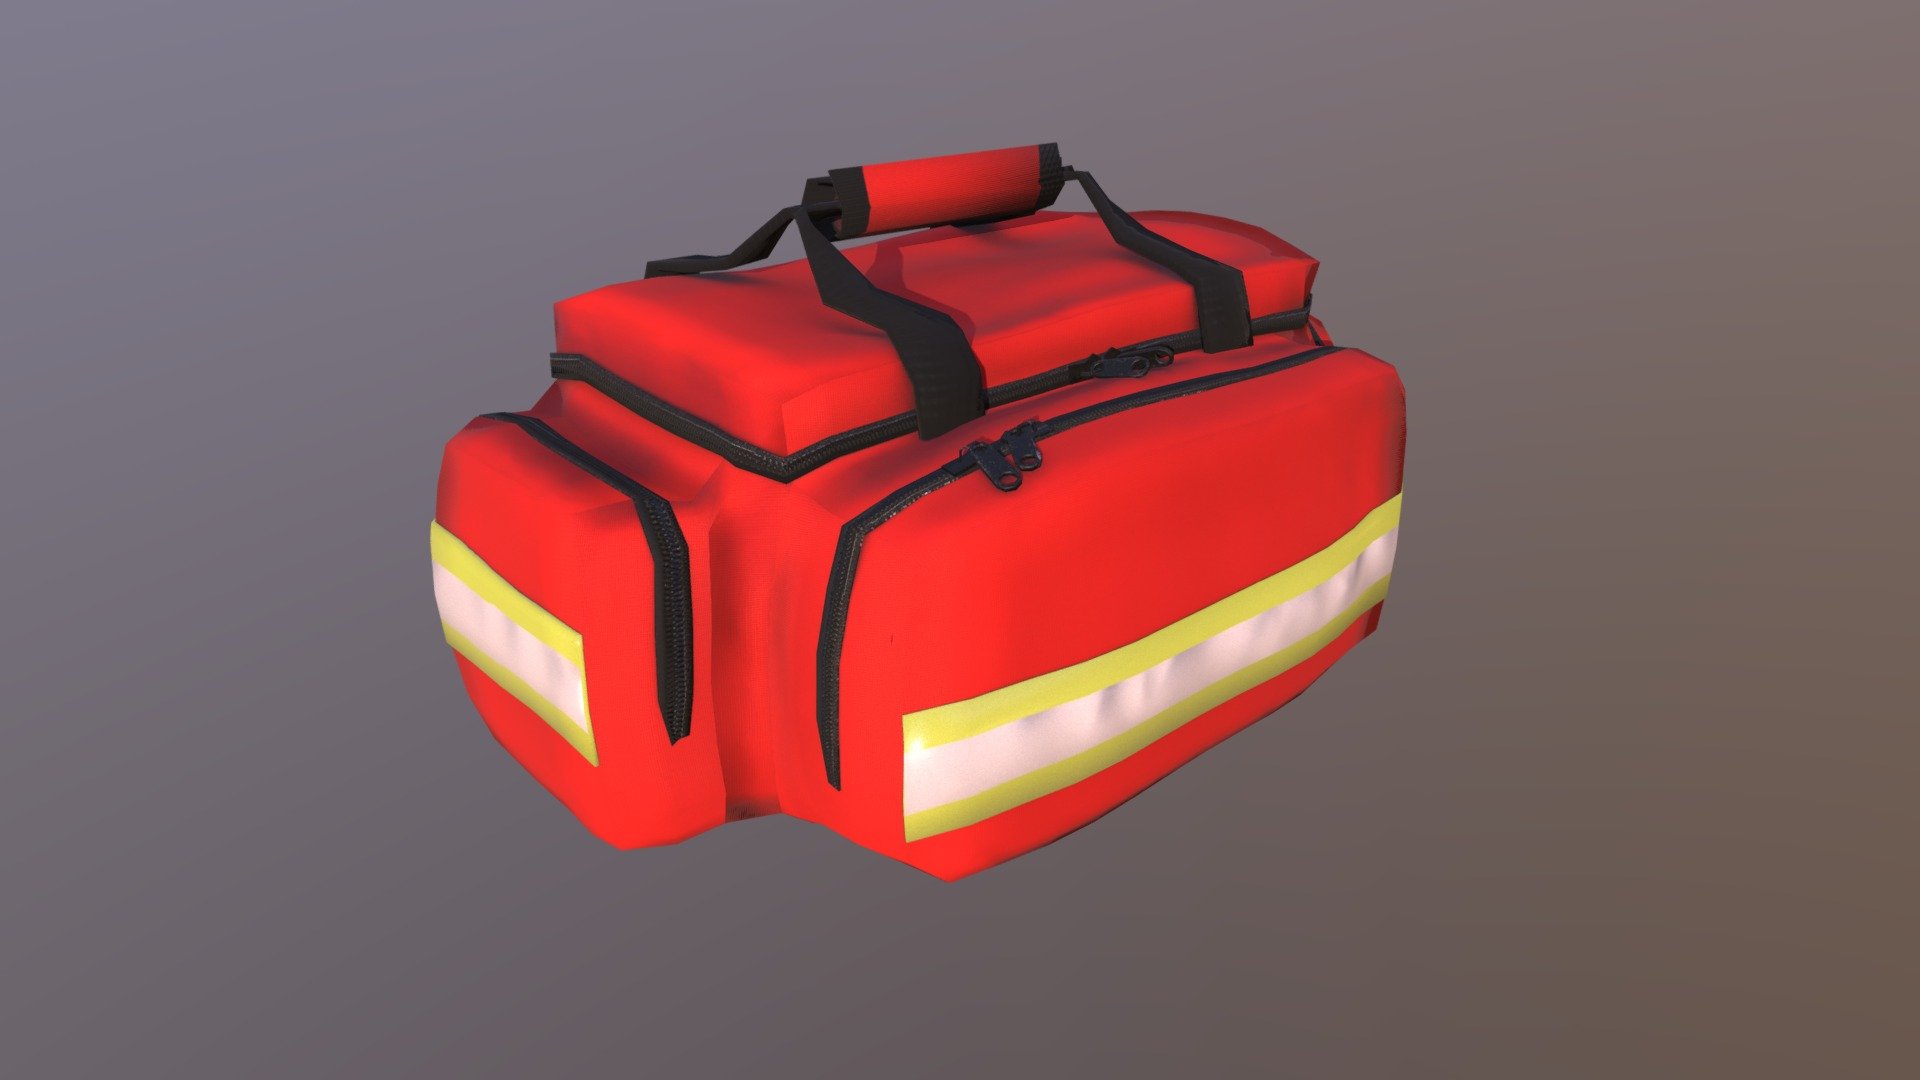 Paramedic Bag